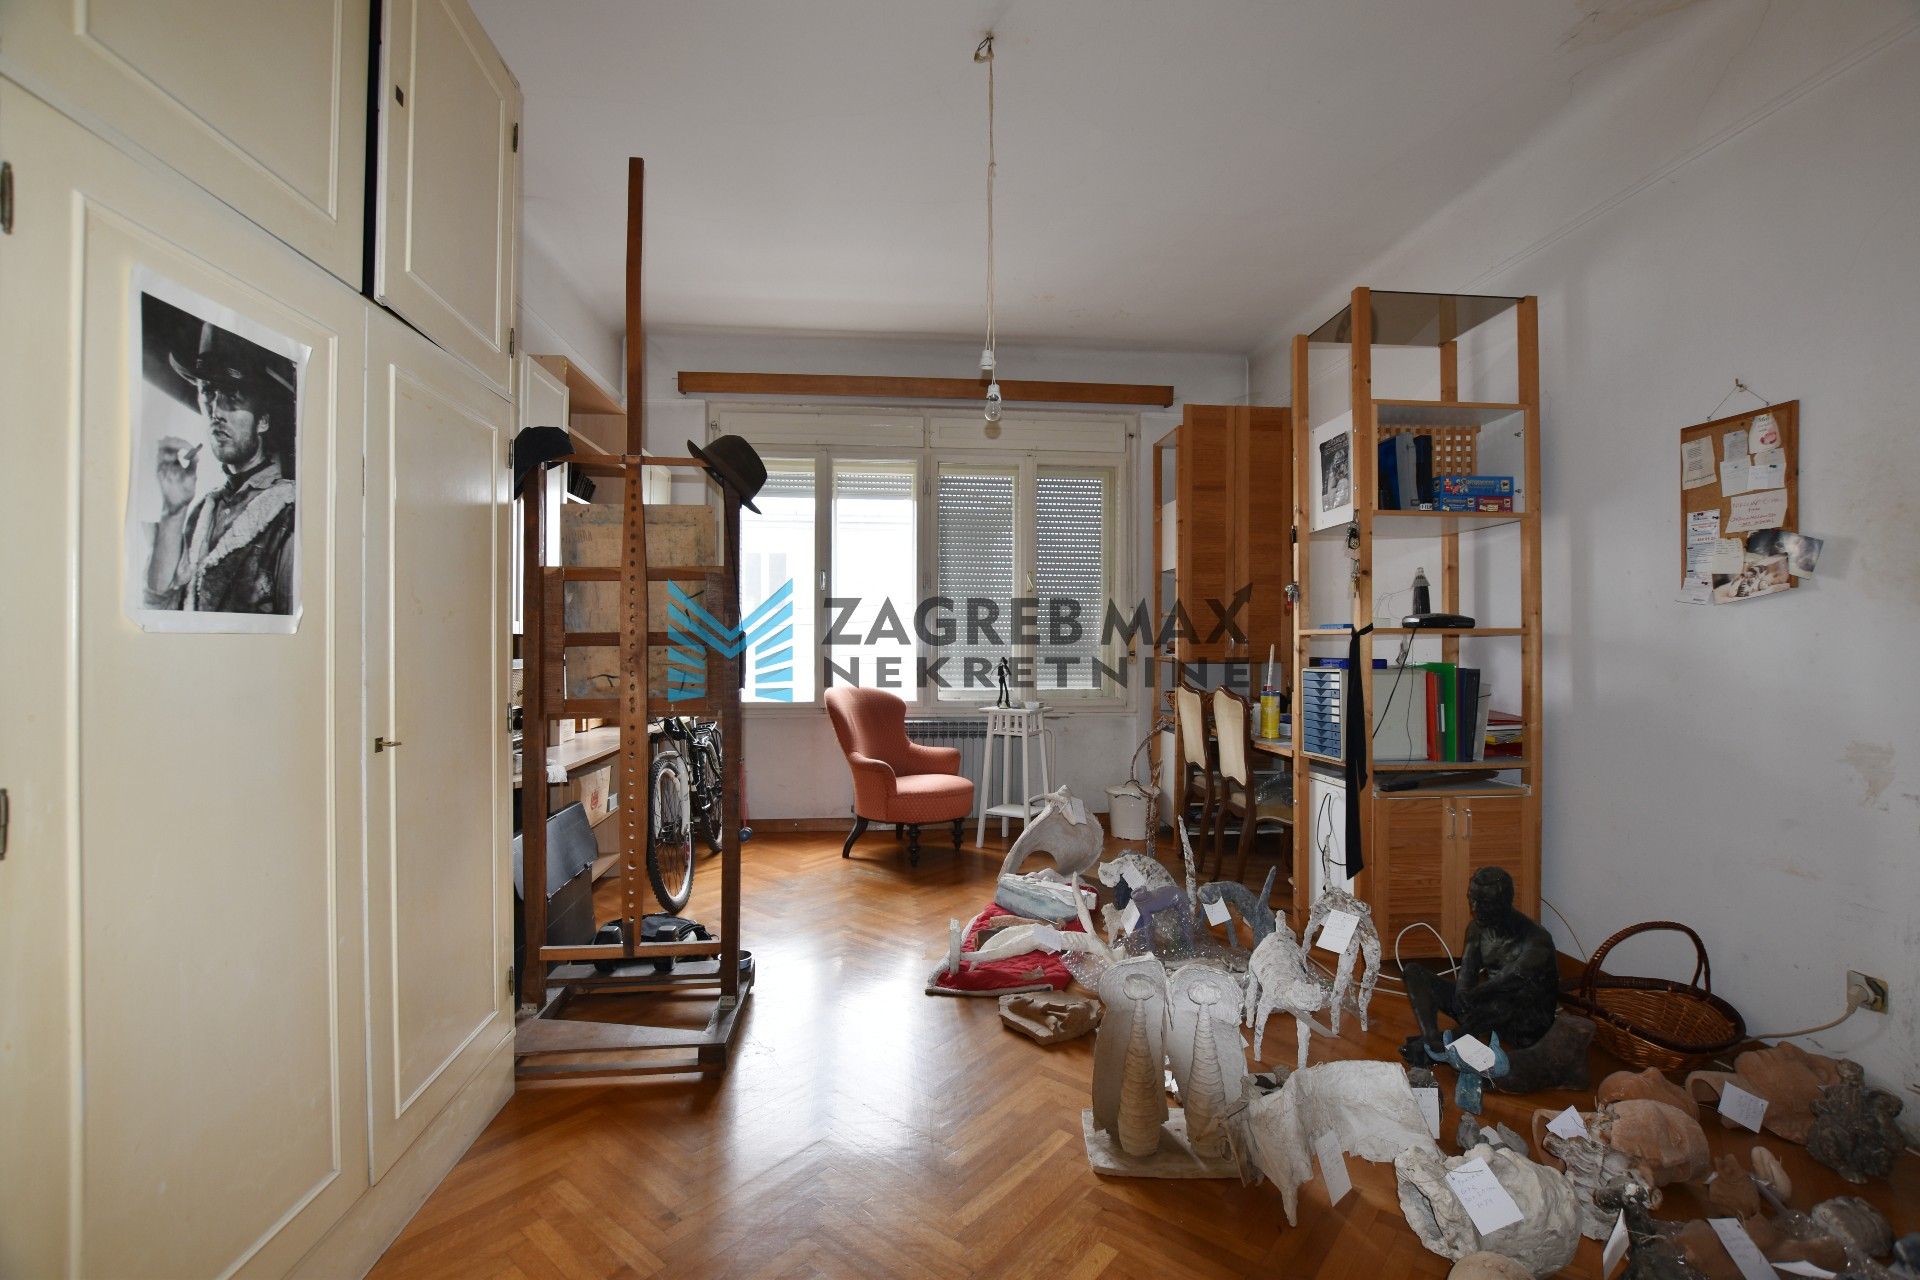 Zagreb - VRHOVEC Prostran 6soban stan 187 m2 + 2 garaže 34 m2, 1. kat, loggia, balkon, odlična lokacija